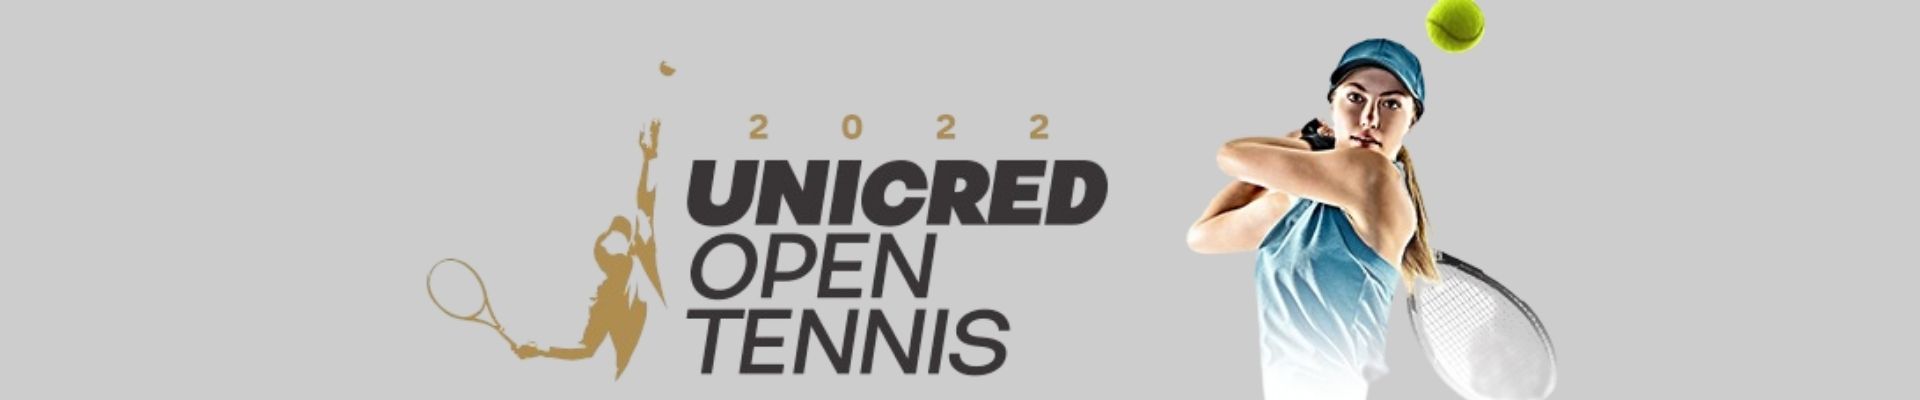 Unicred Open Tennis 2022 acontece entre 20 e 22 na sede da ACM